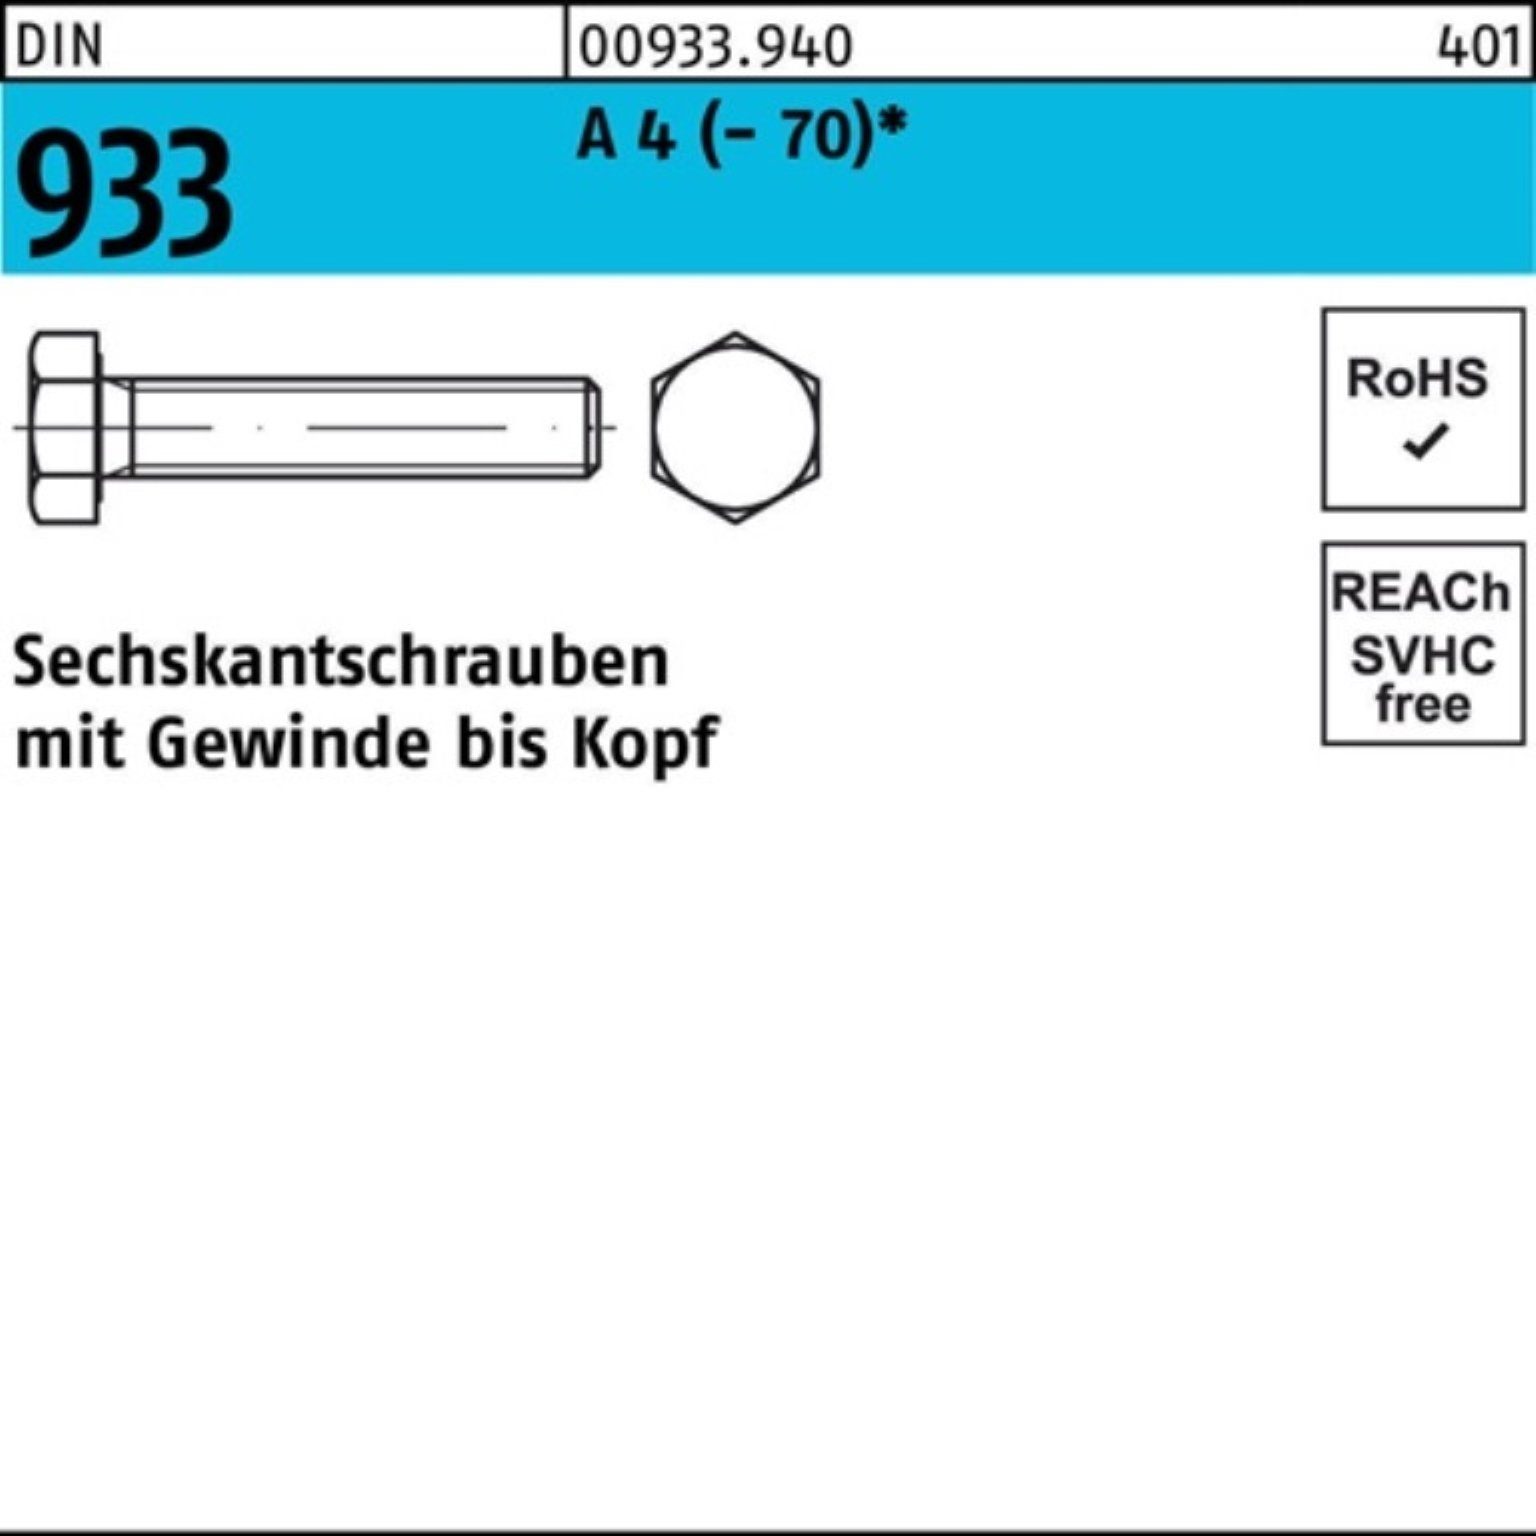 VG DIN A DI Pack M33x 1 Sechskantschraube 100er (70) Reyher Sechskantschraube 933 70 Stück 4